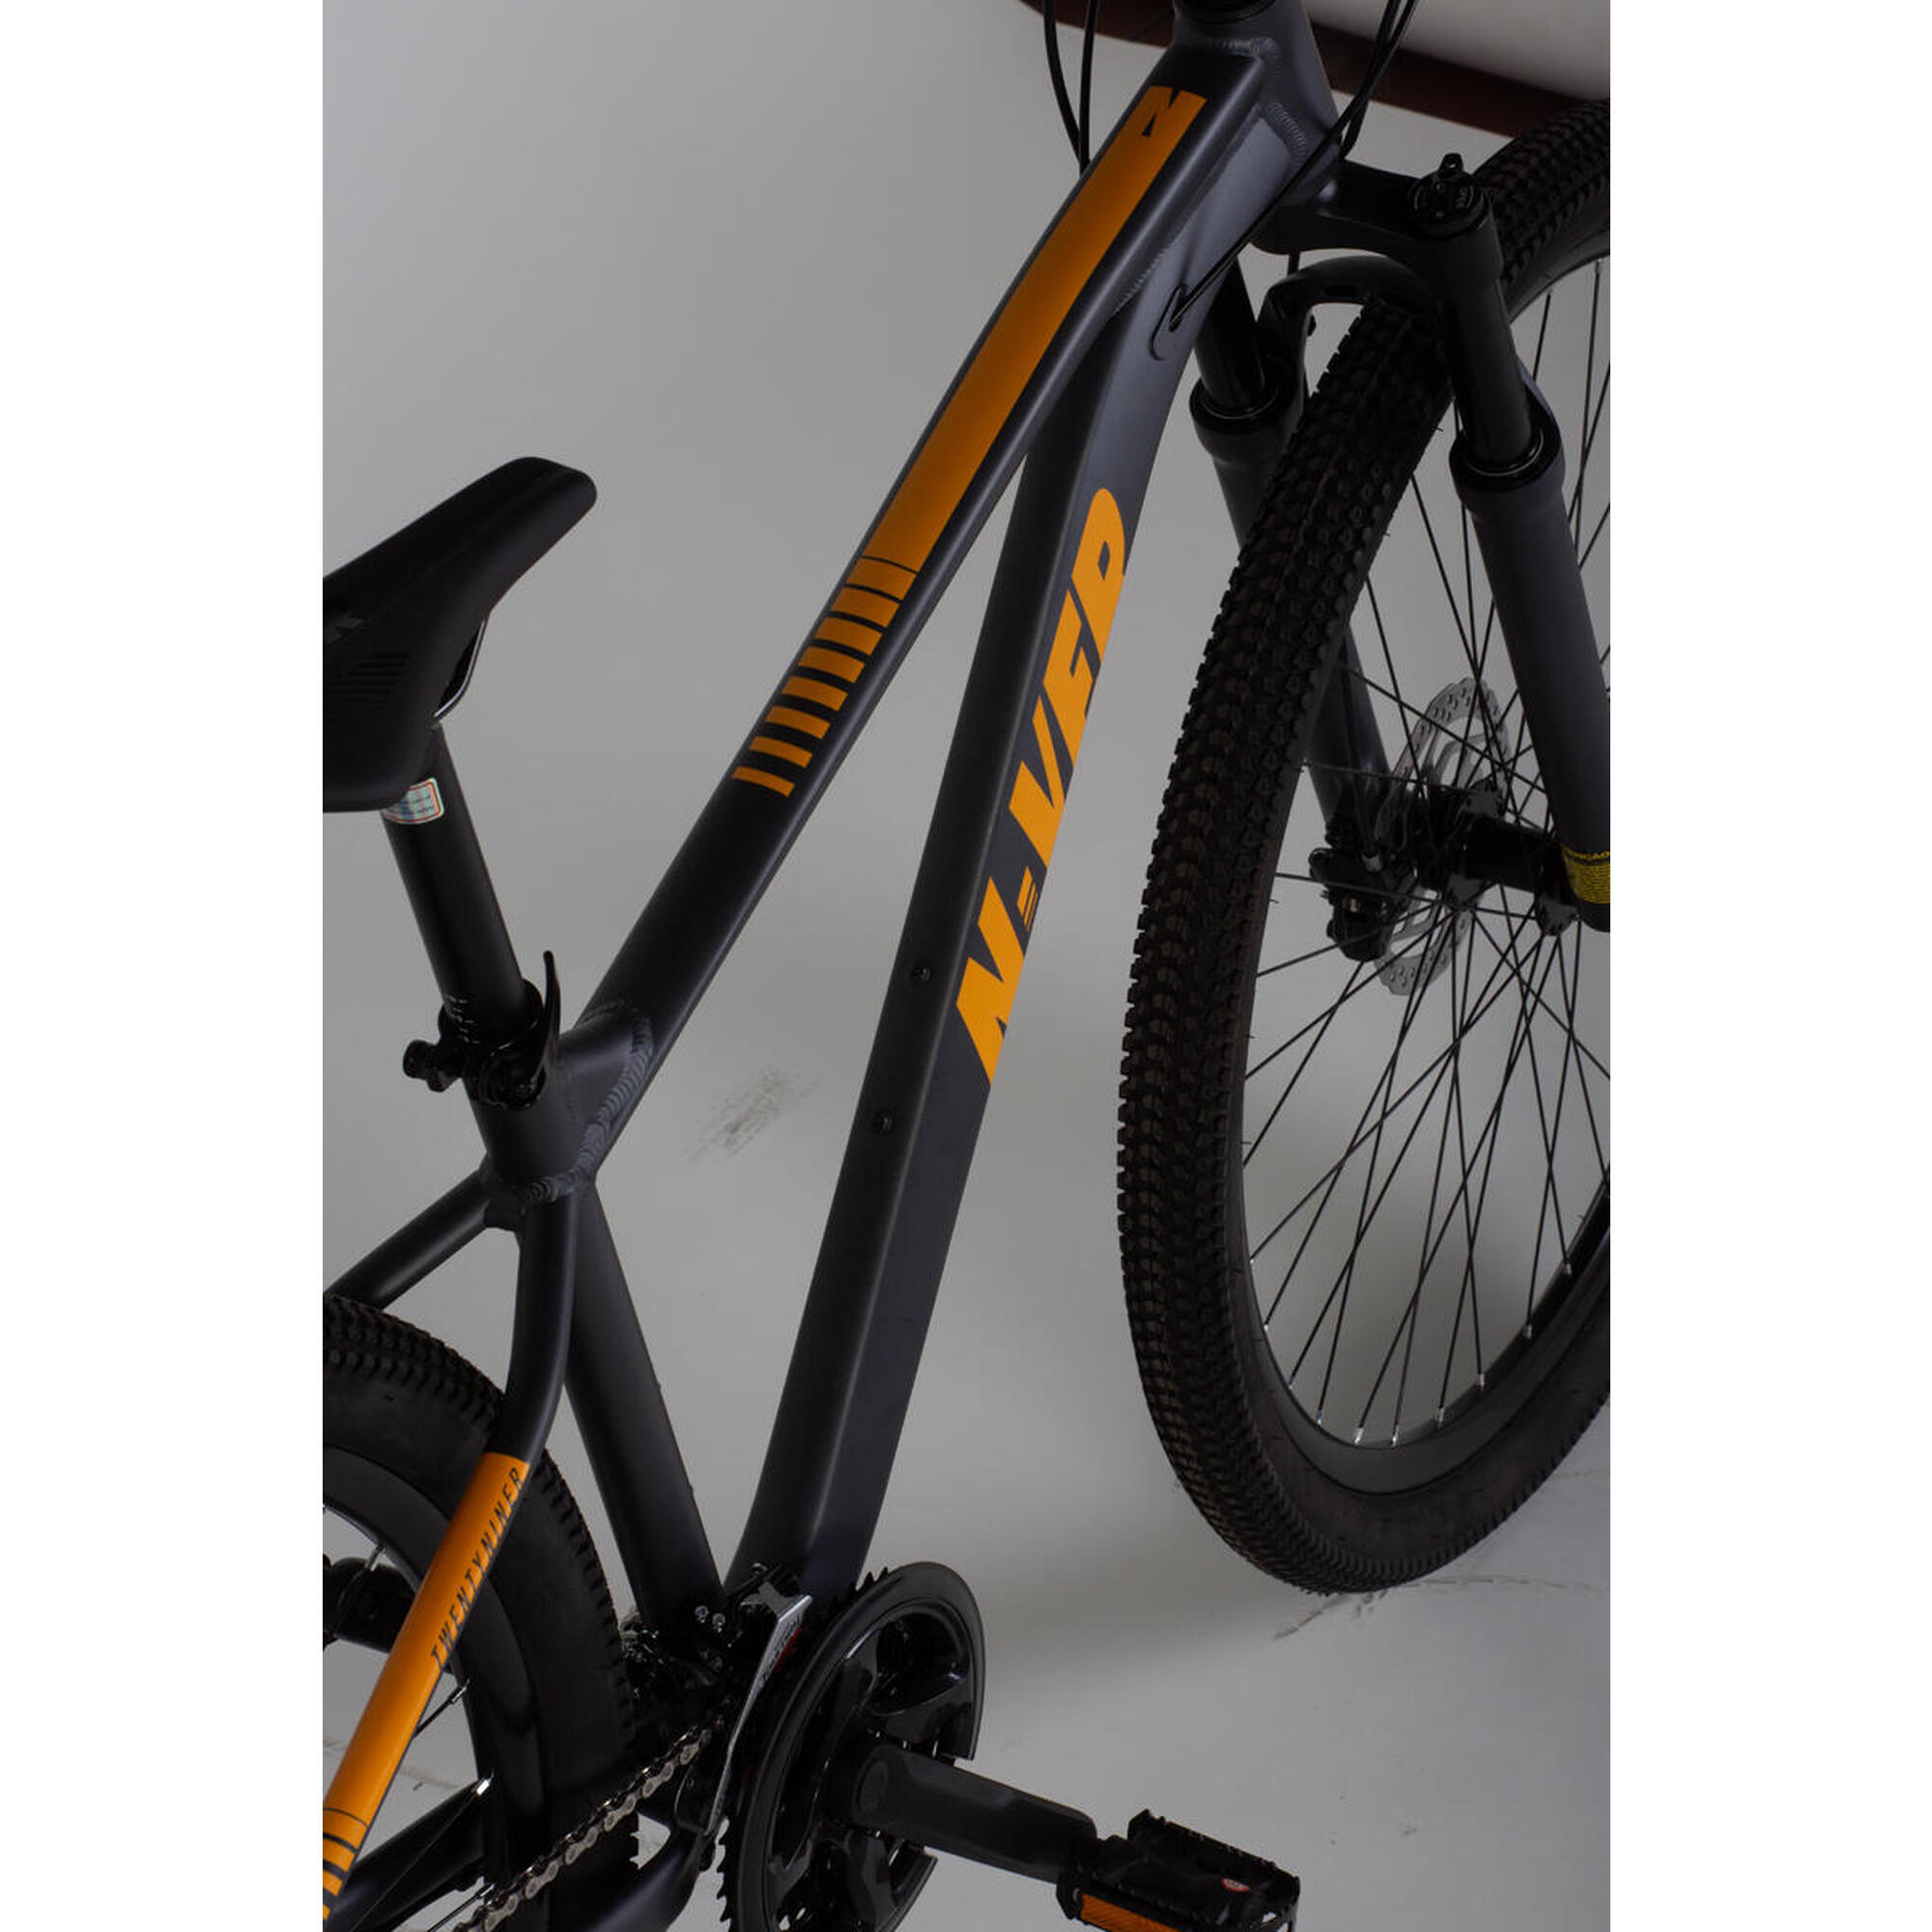 Bicicleta Nv 908 com rodas 29″, 24 velocidades, freio a disco hidráulico